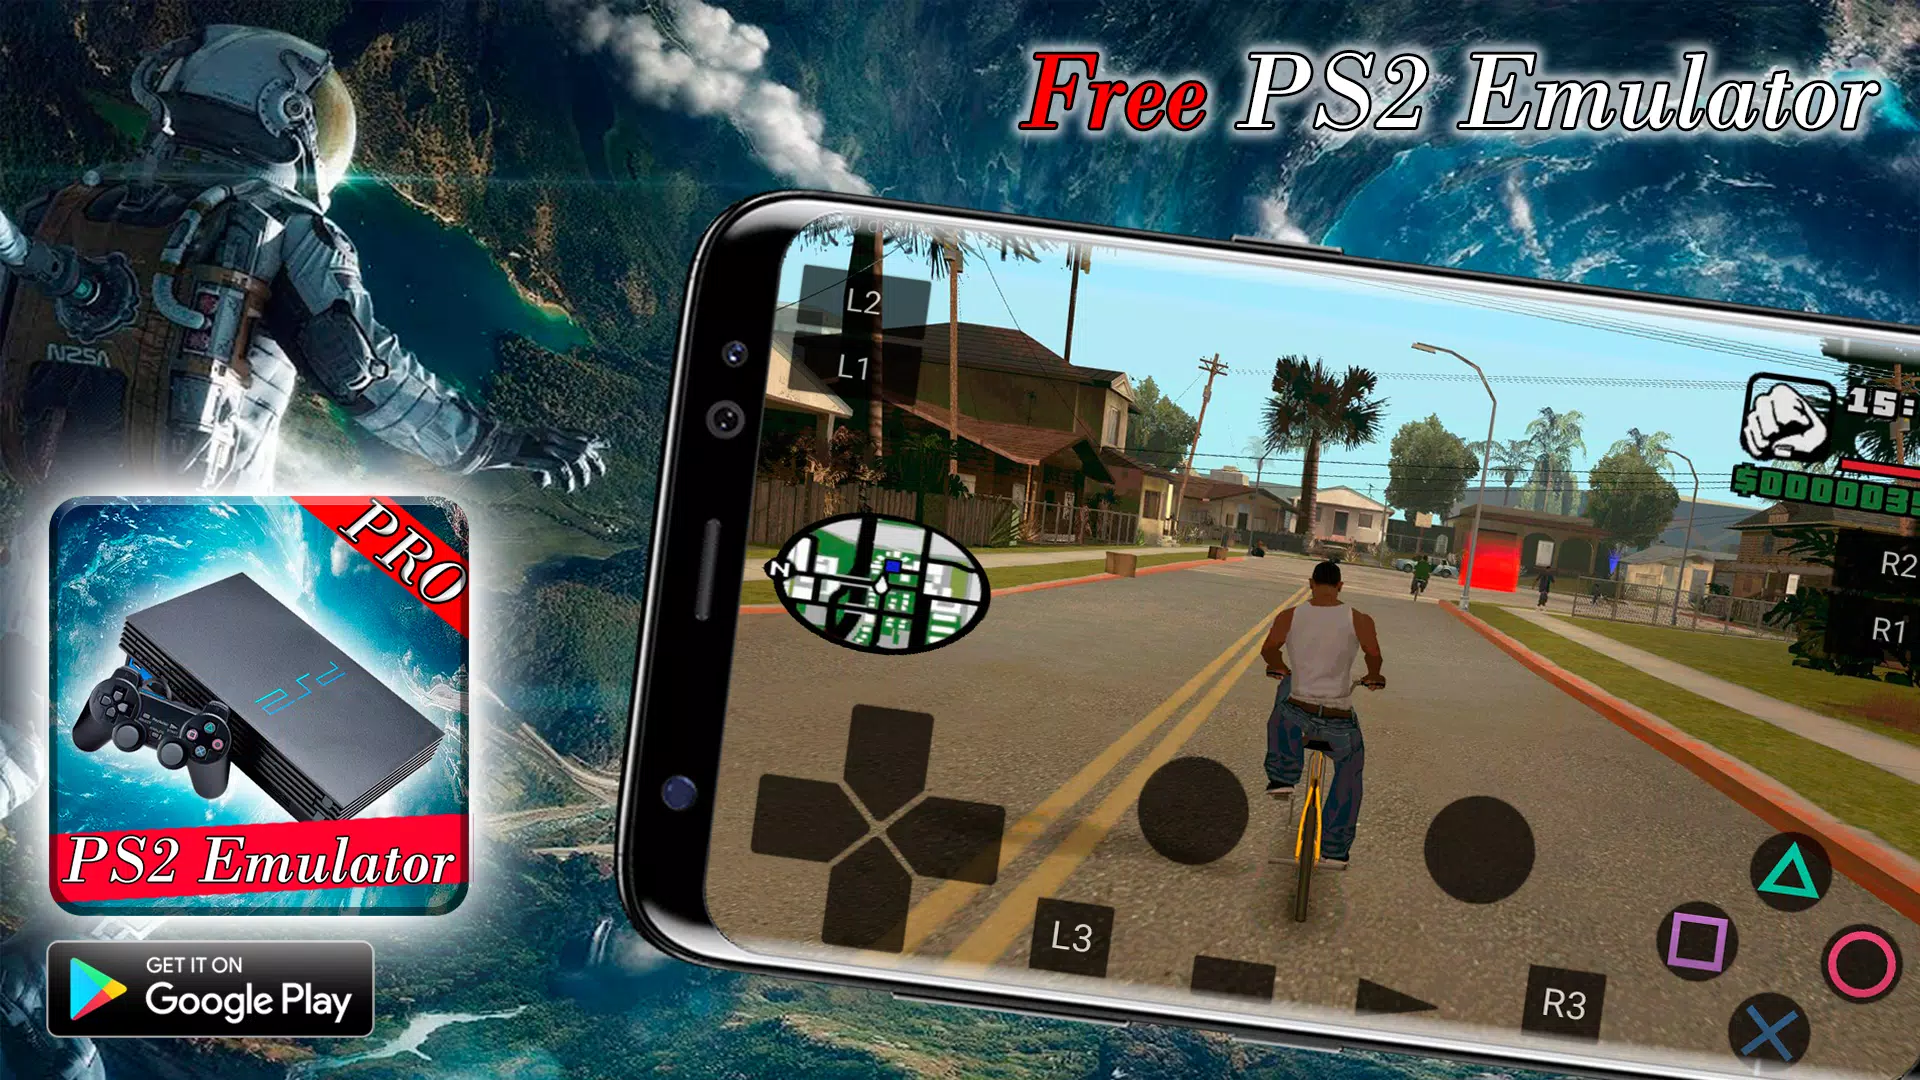 Descarga de APK de Free Pro PS2 Emulator Games For Android para Android